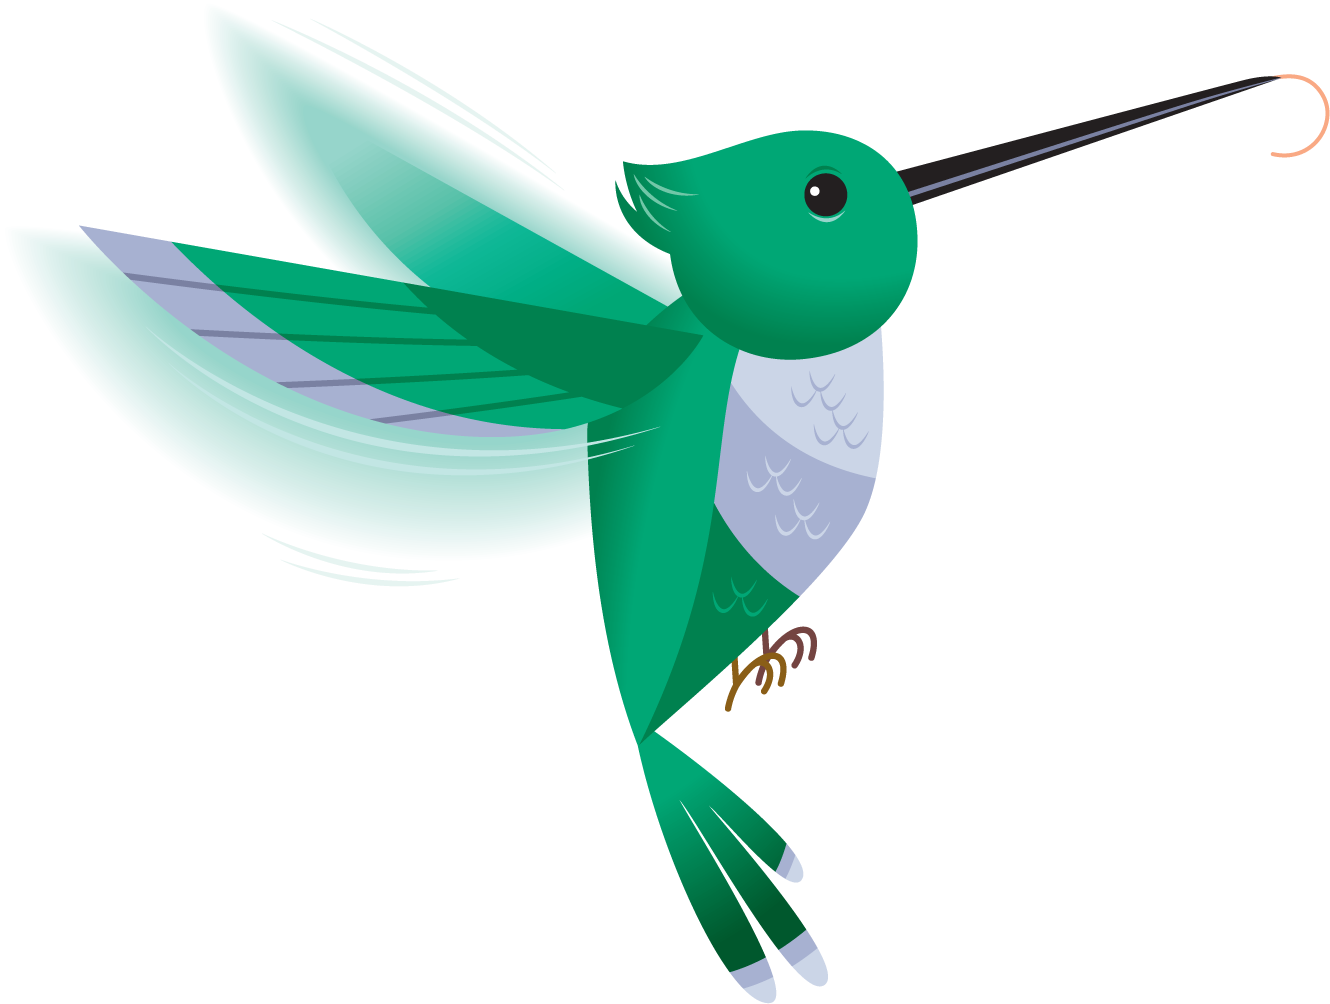 A Green Bird With A Long Beak